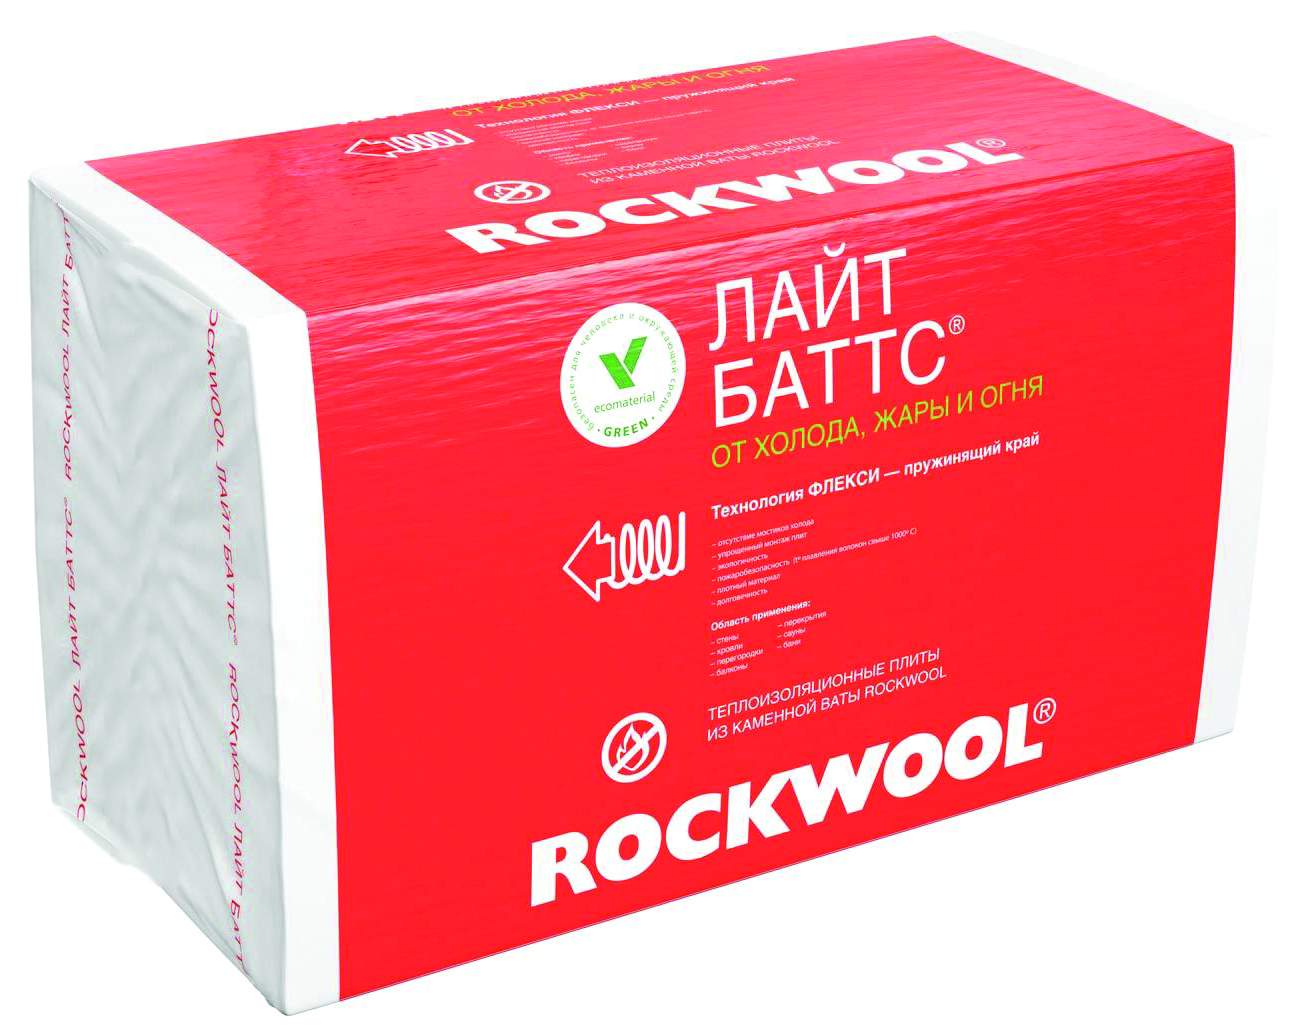  вата Rockwool Лайт Баттс, 1000 x 600 x 50 мм, 10 плит  в .